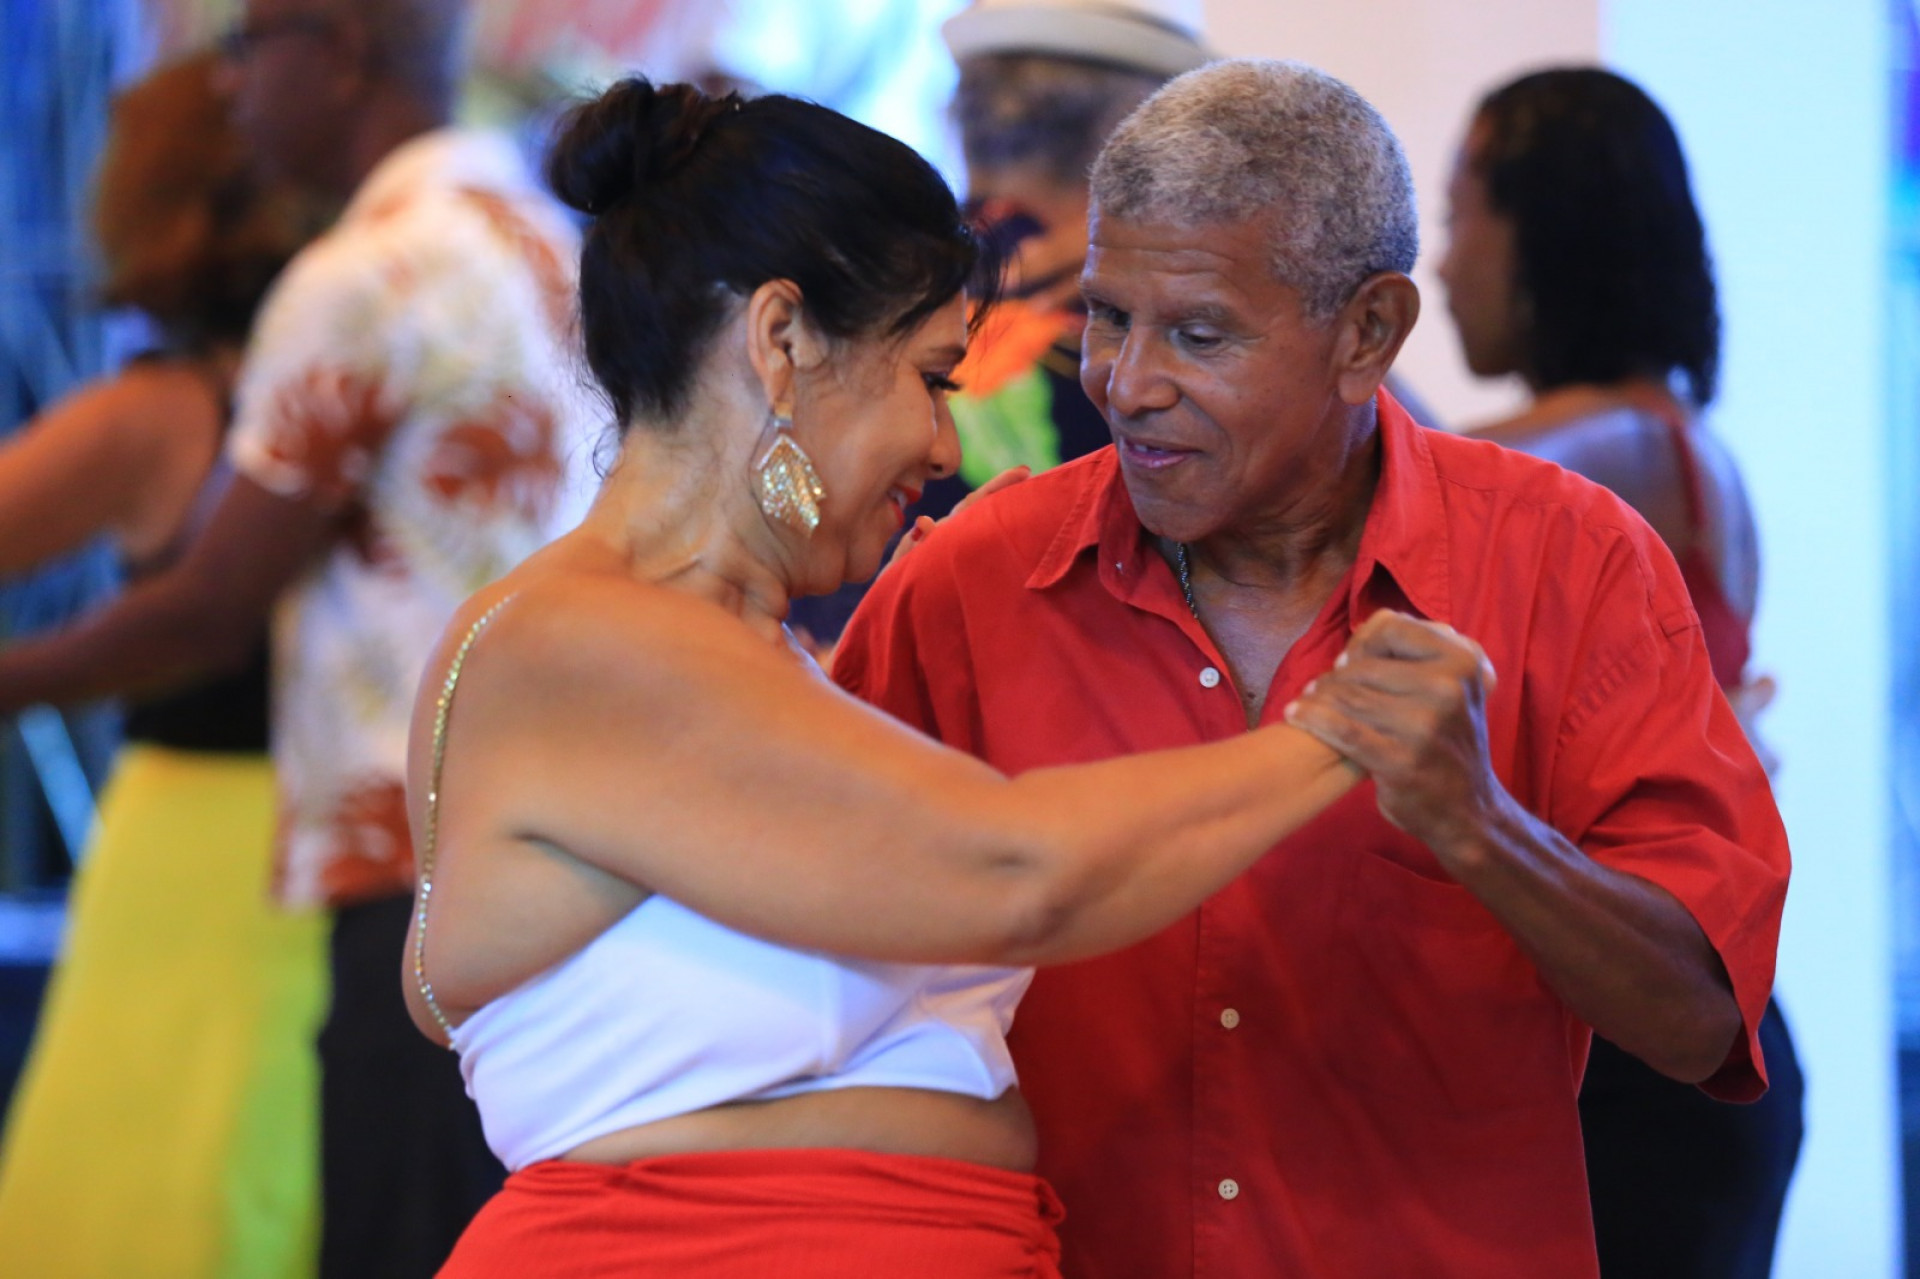 O baile é um momento de confraternização e de muita alegria para os participantes - Rafael Barreto / PMBR